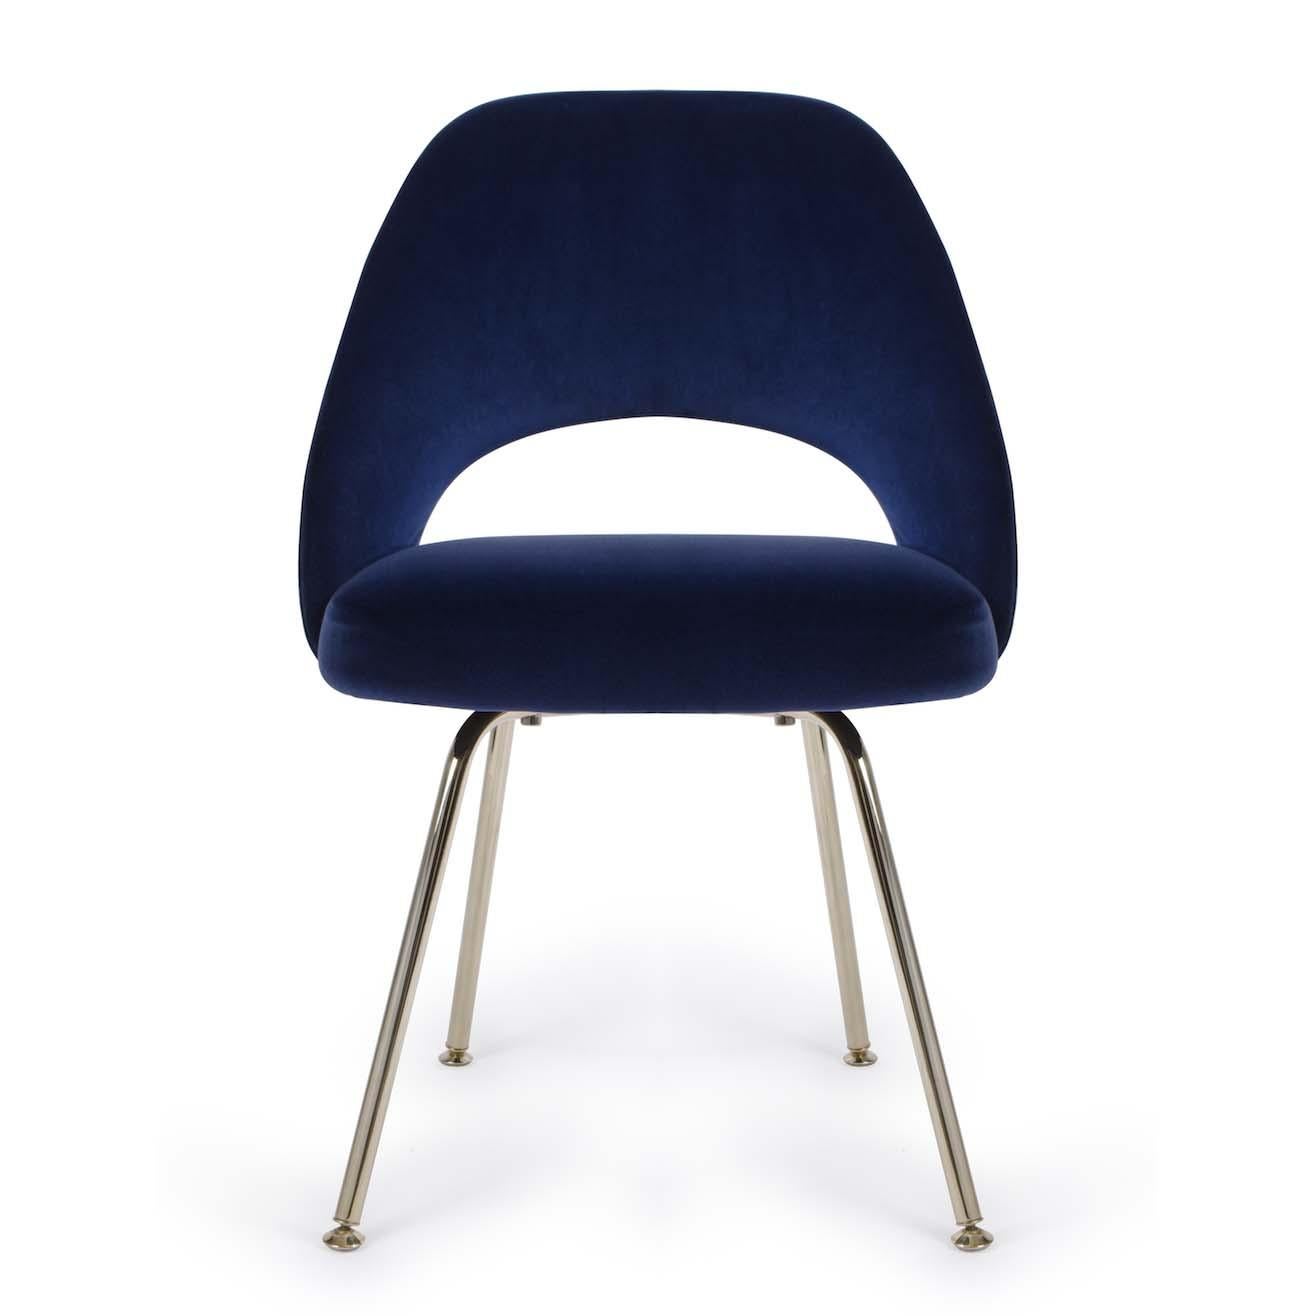 Wir restaurieren seit Jahren Saarinen Executive Chairs in allen erdenklichen Stoffen. Wir haben diese Beistellstühle mit polierten Stahlrohrbeinen restauriert und dabei unsere herrliche Kollektion italienischer Baumwollsamtstoffe verwendet. Neben